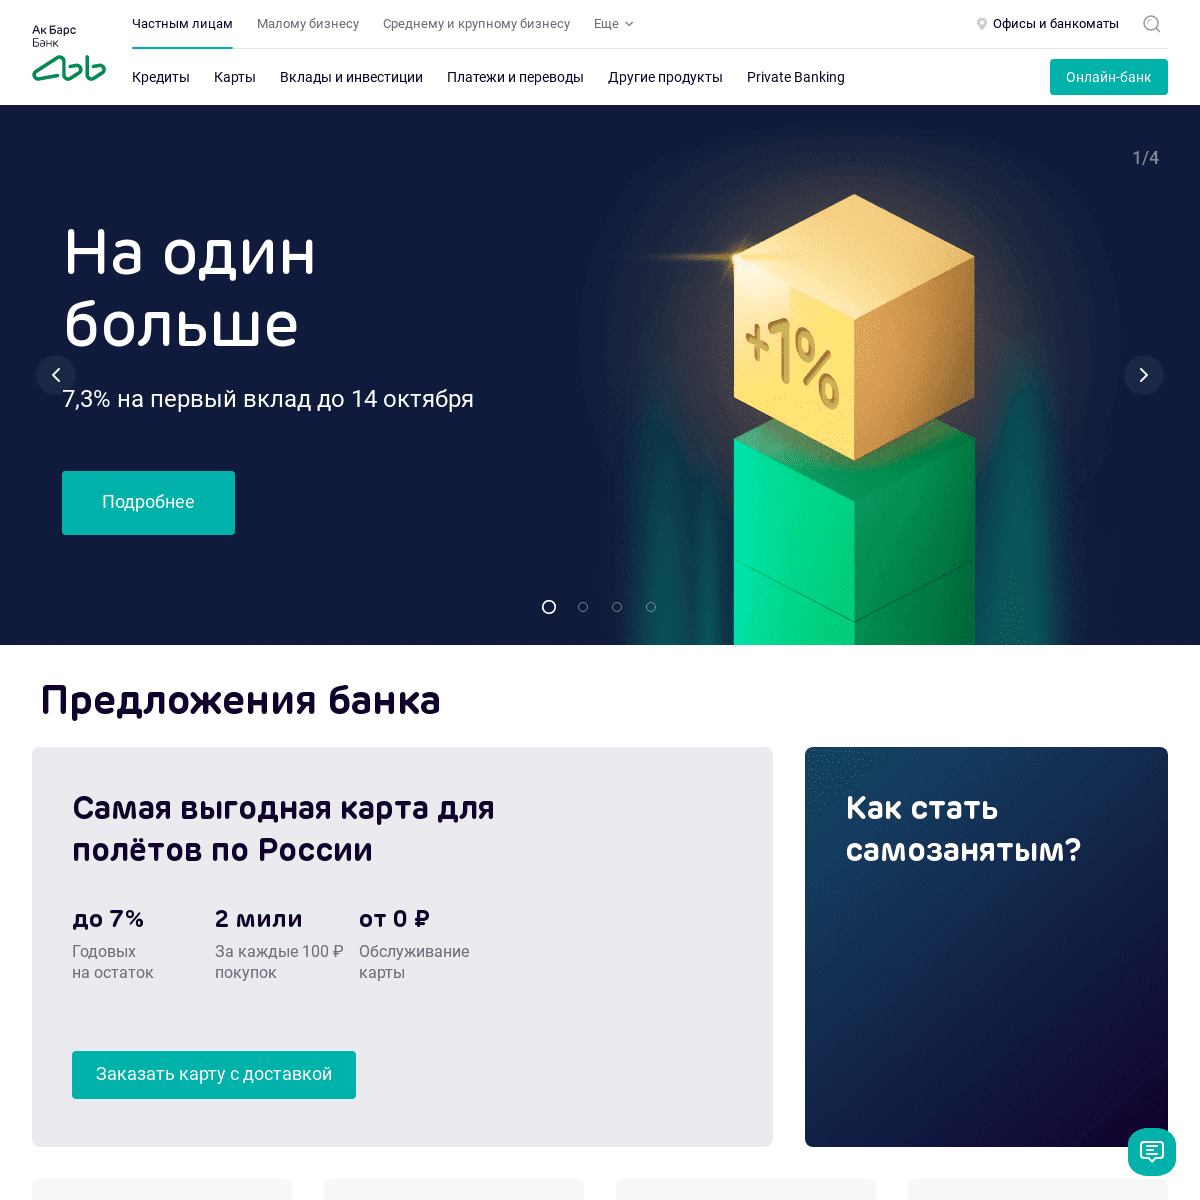 A complete backup of akbars.ru